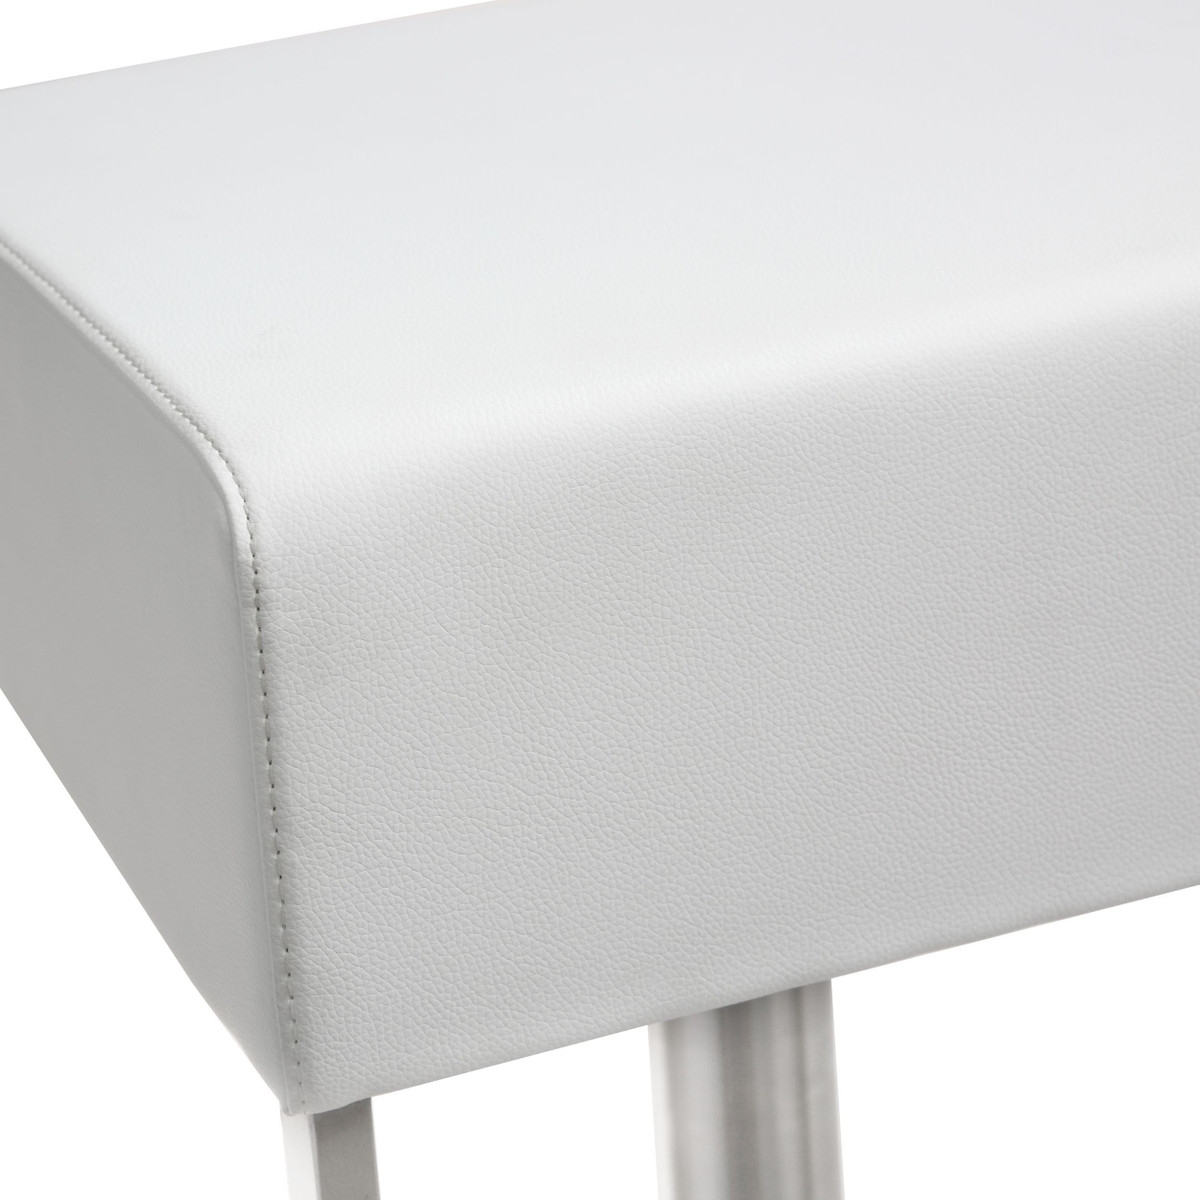 Seville White Stainless Adjustable Barstool - Image 3